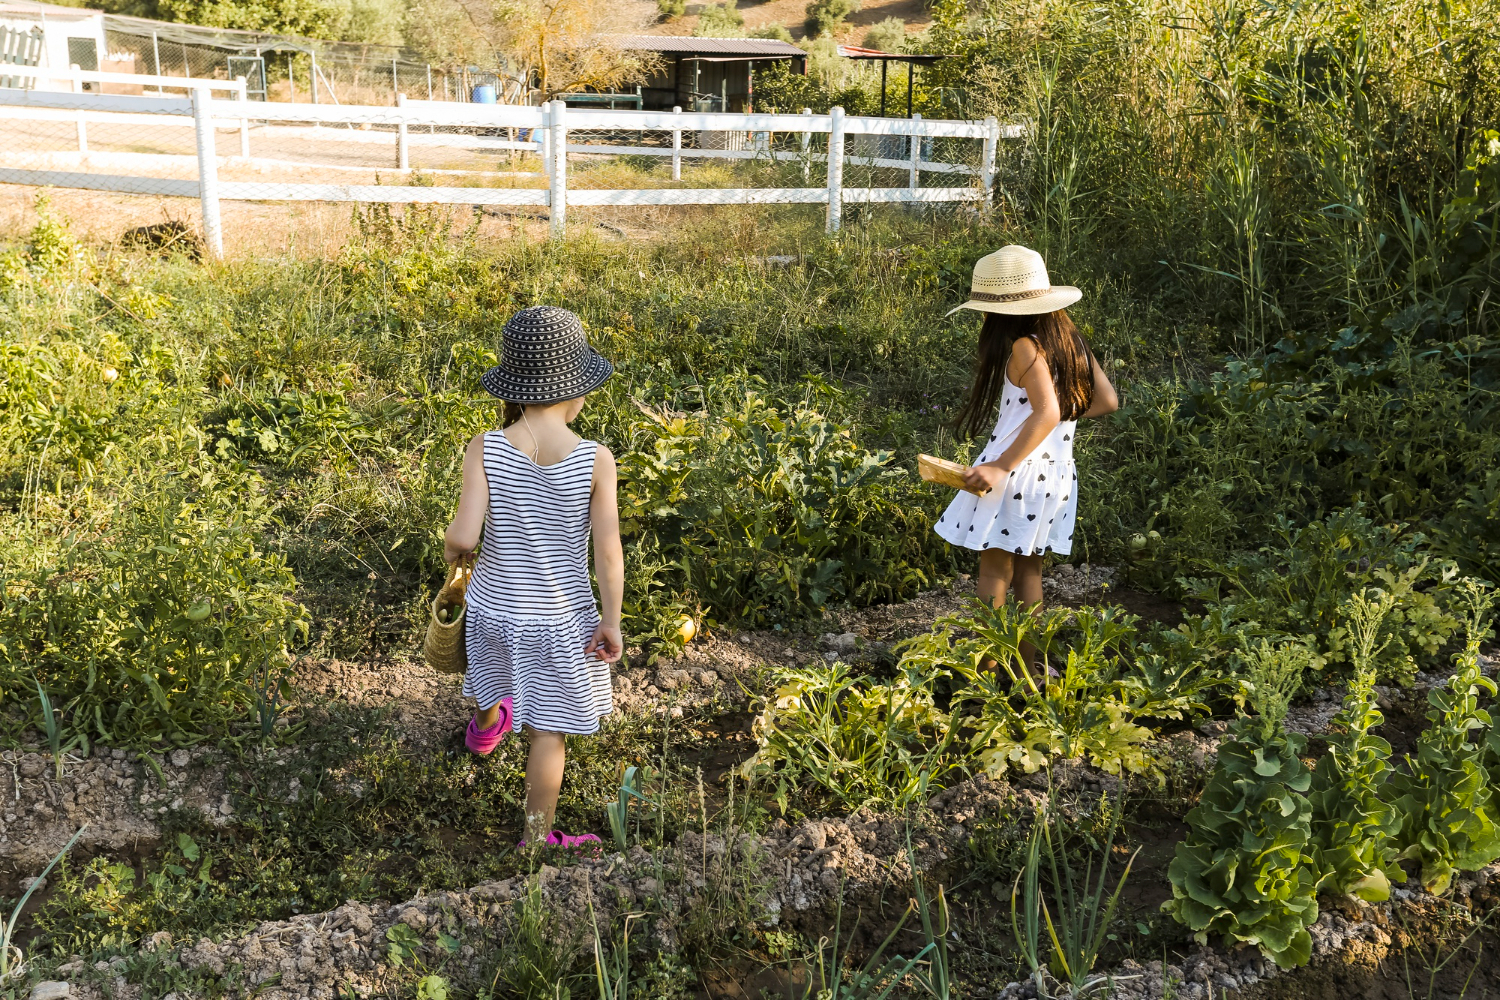 В МЧС посоветовали держать садовый инвентарь подальше от детей